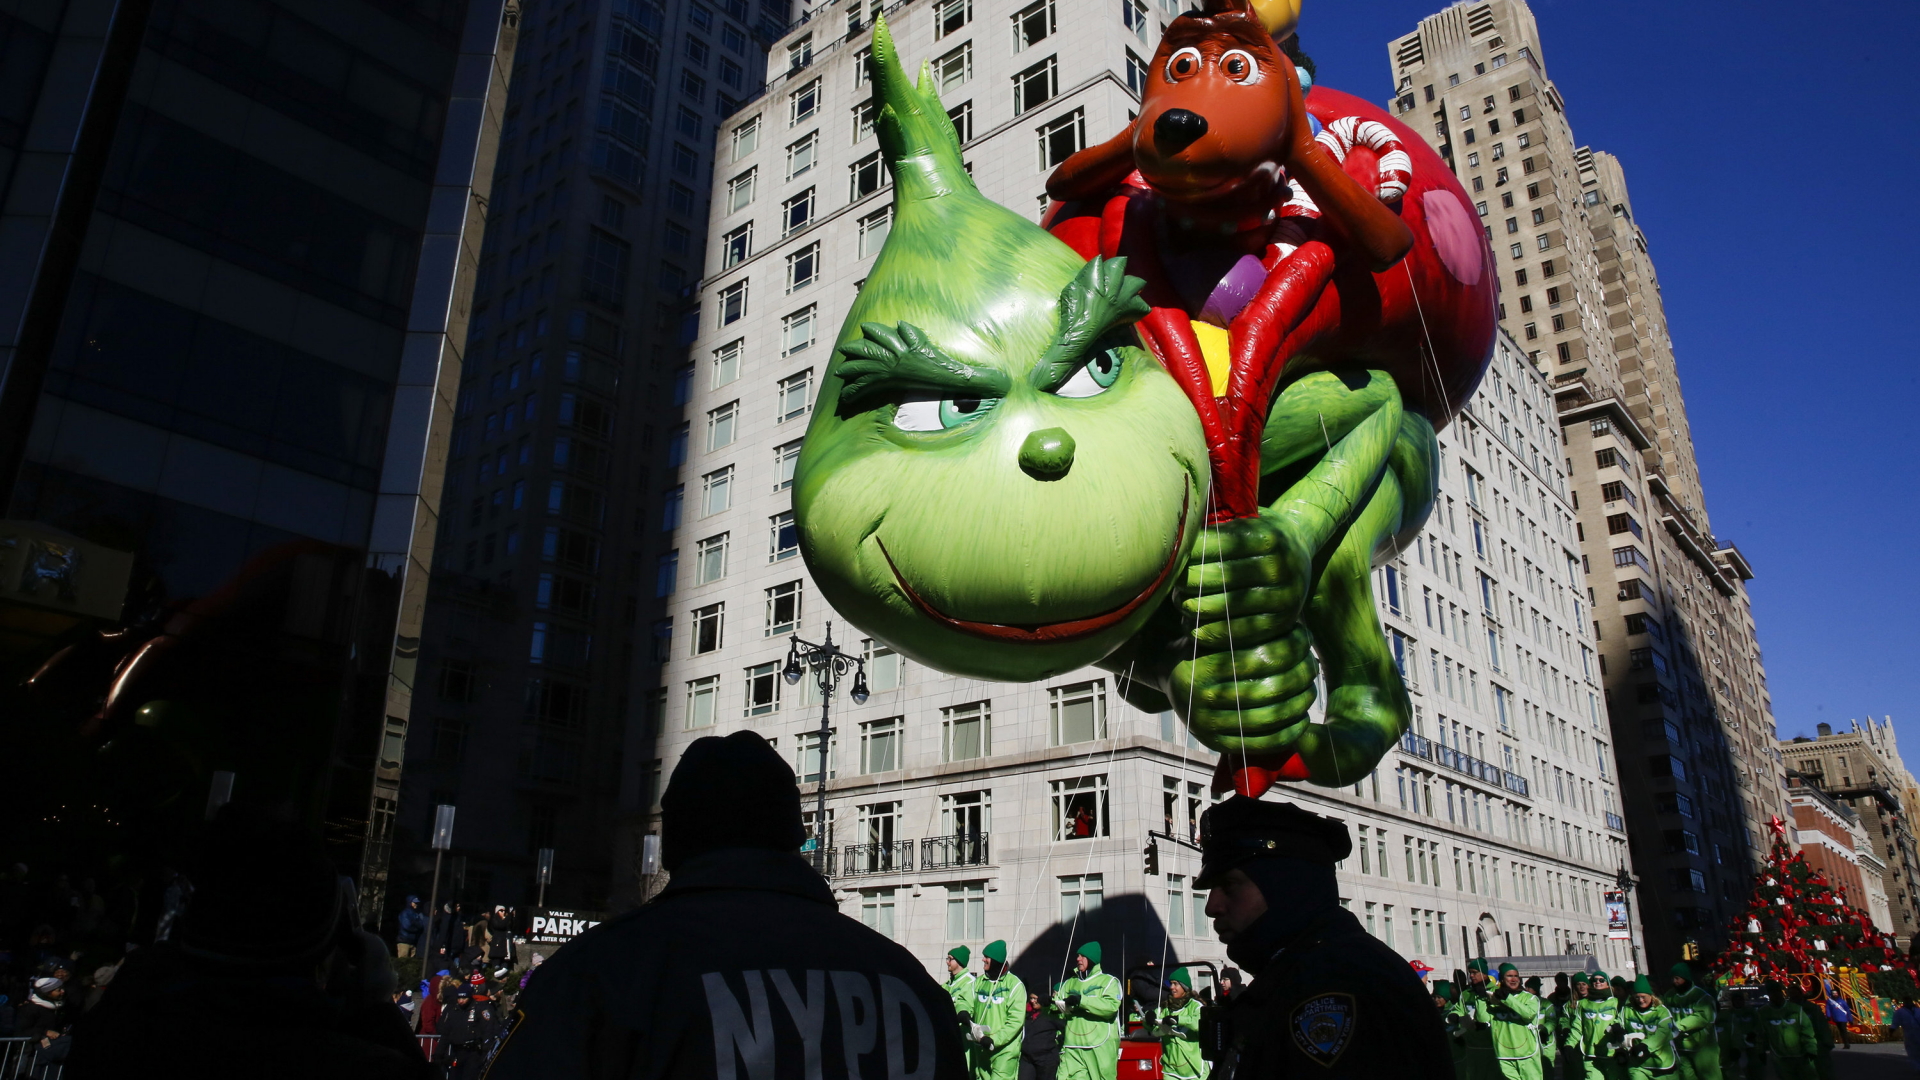 Der Grinch schwebt als Luftballon auf einer Parade in new York | dpa